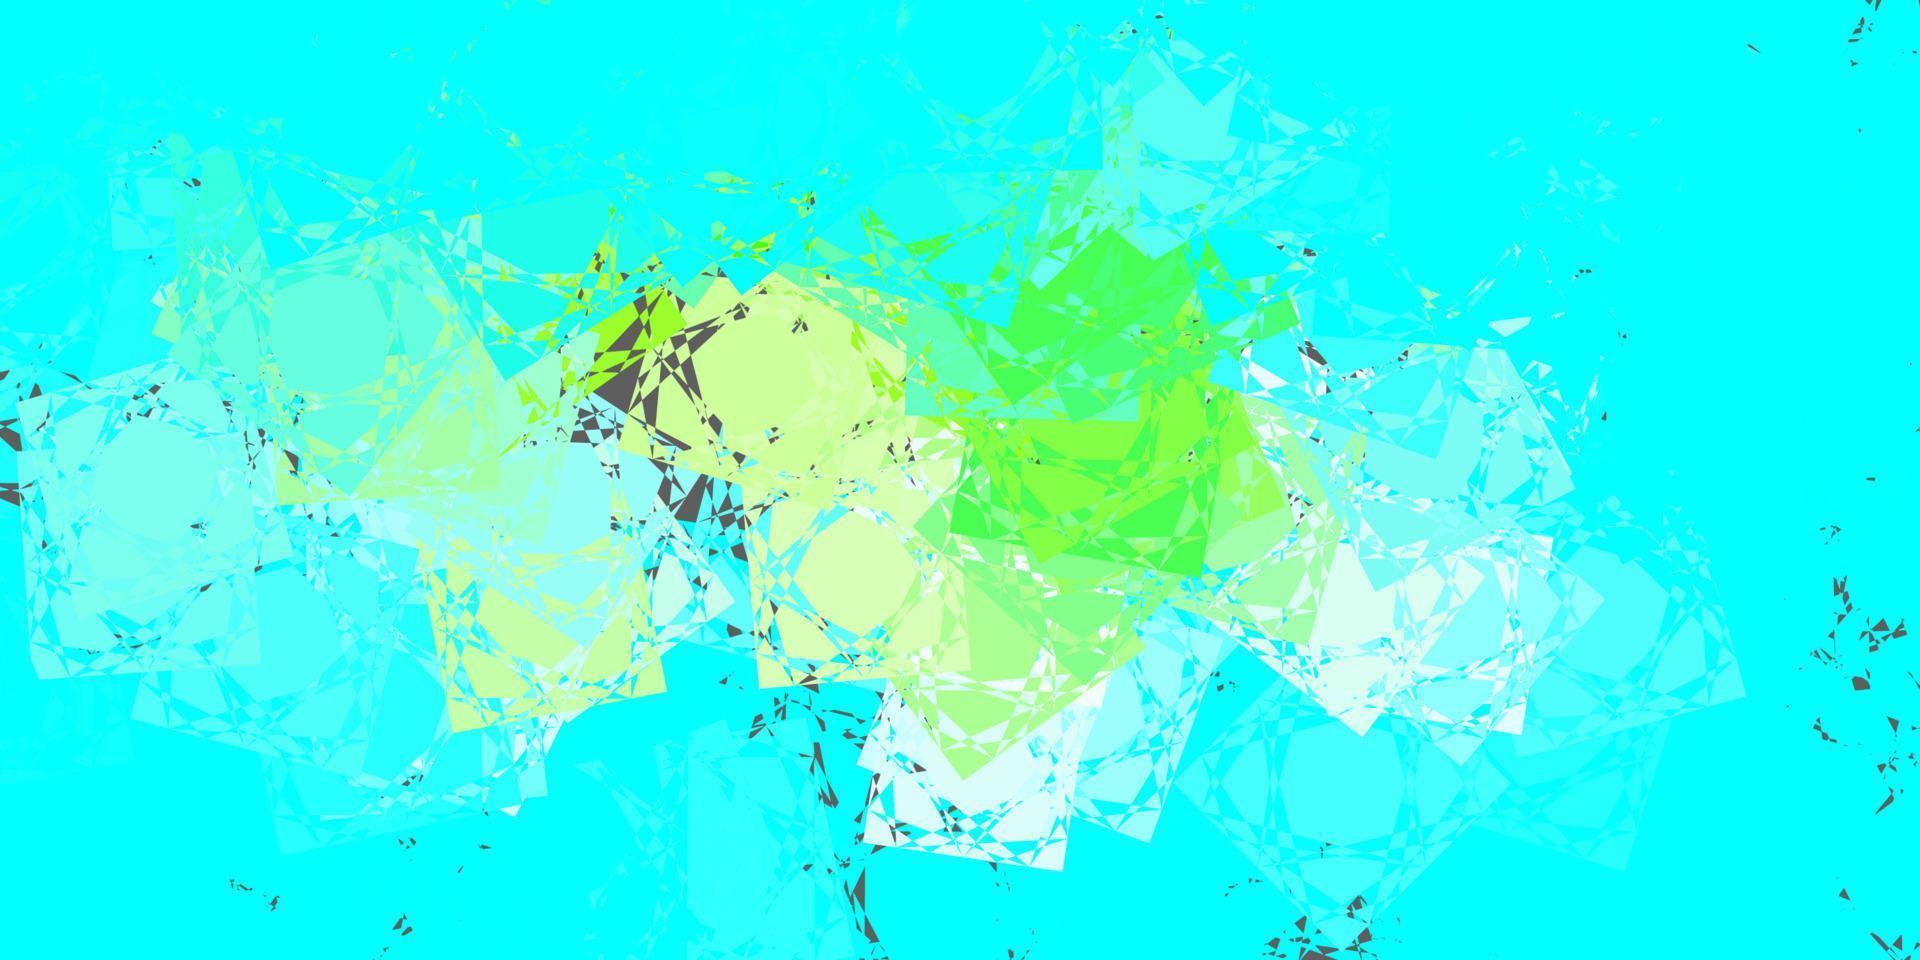 sfondo vettoriale azzurro, verde con triangoli, linee.